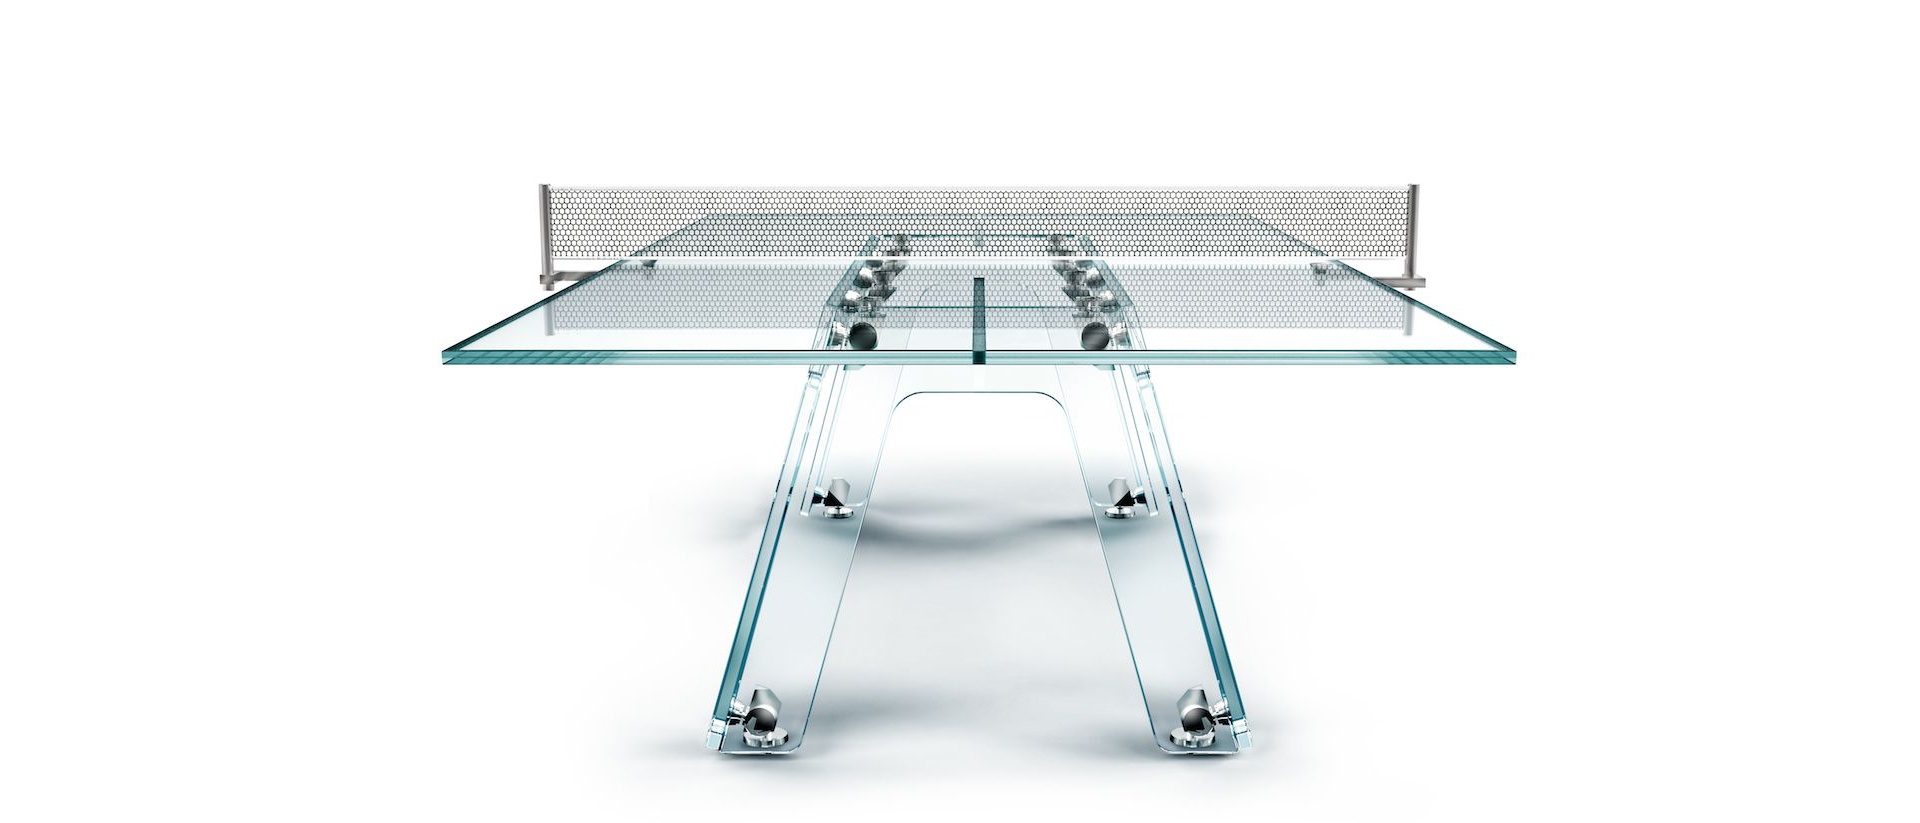 Glasklar: Diesen Ping-Pong-Tisch wirst du lieben 3